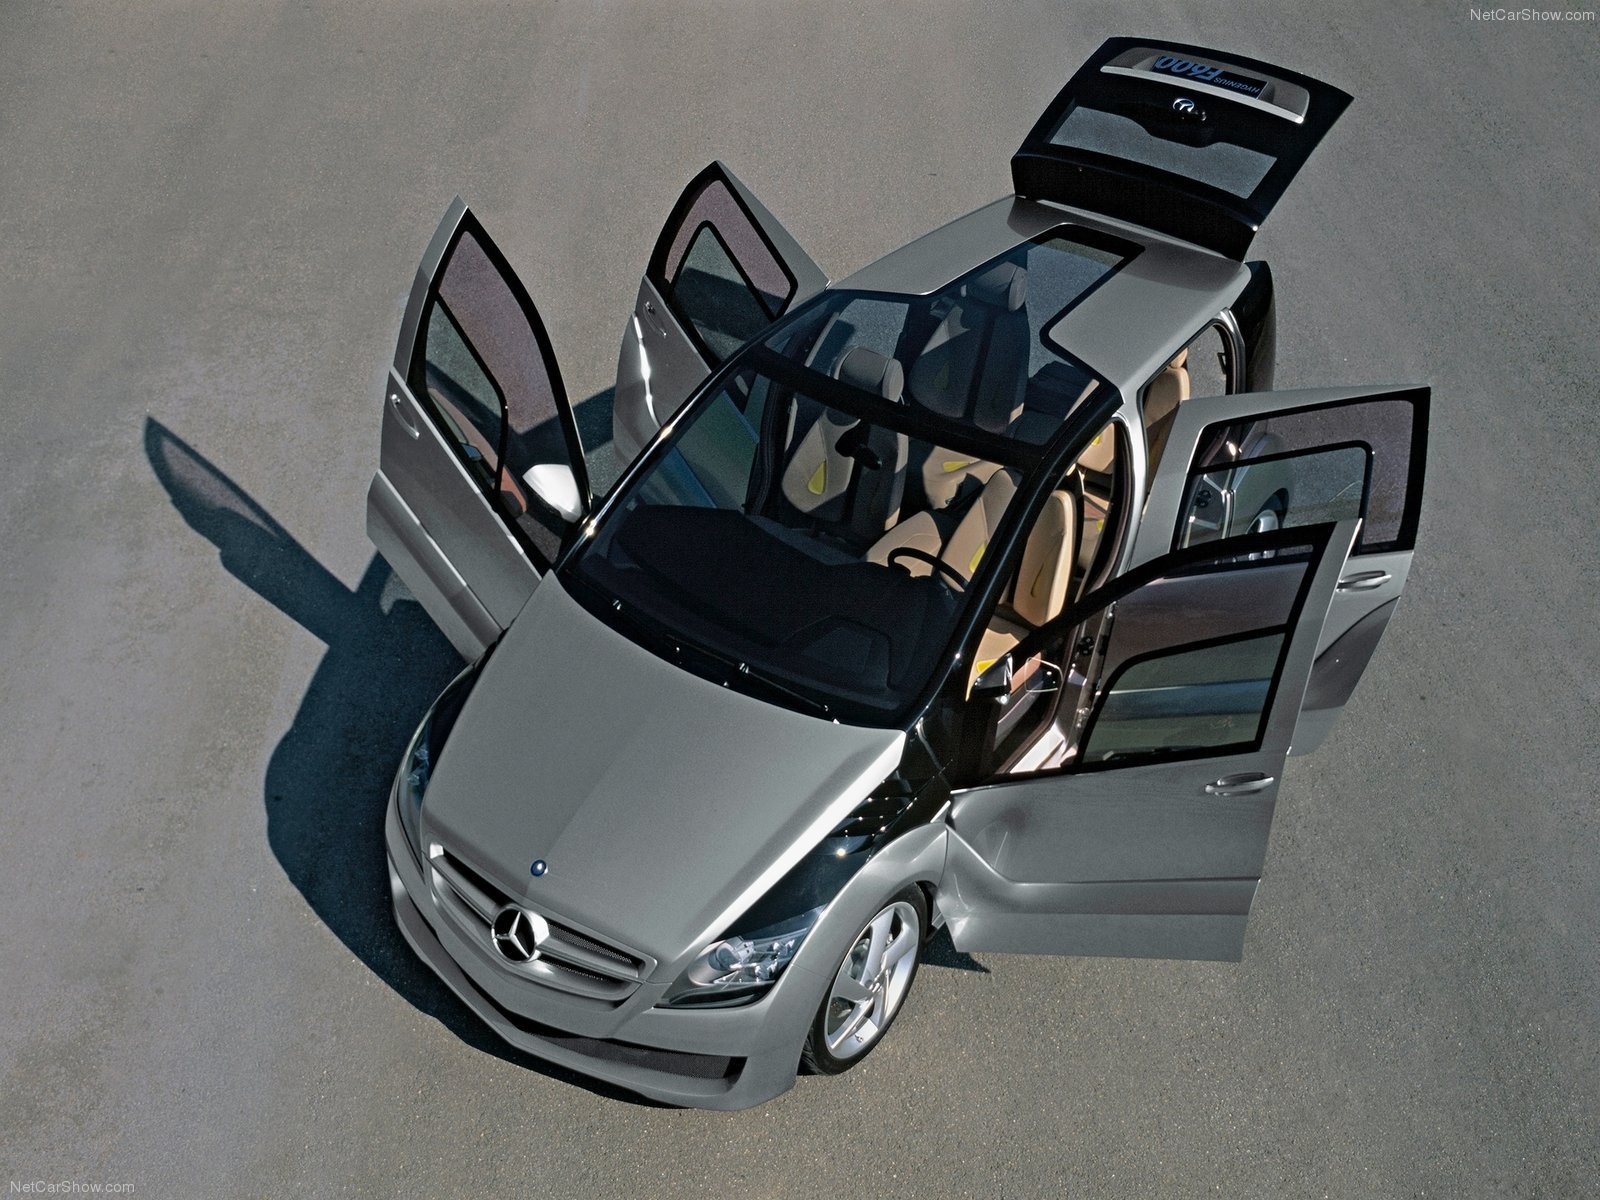 mercedes, Benz, F600, Hygenius, Concept, Cars, 2005 Wallpaper